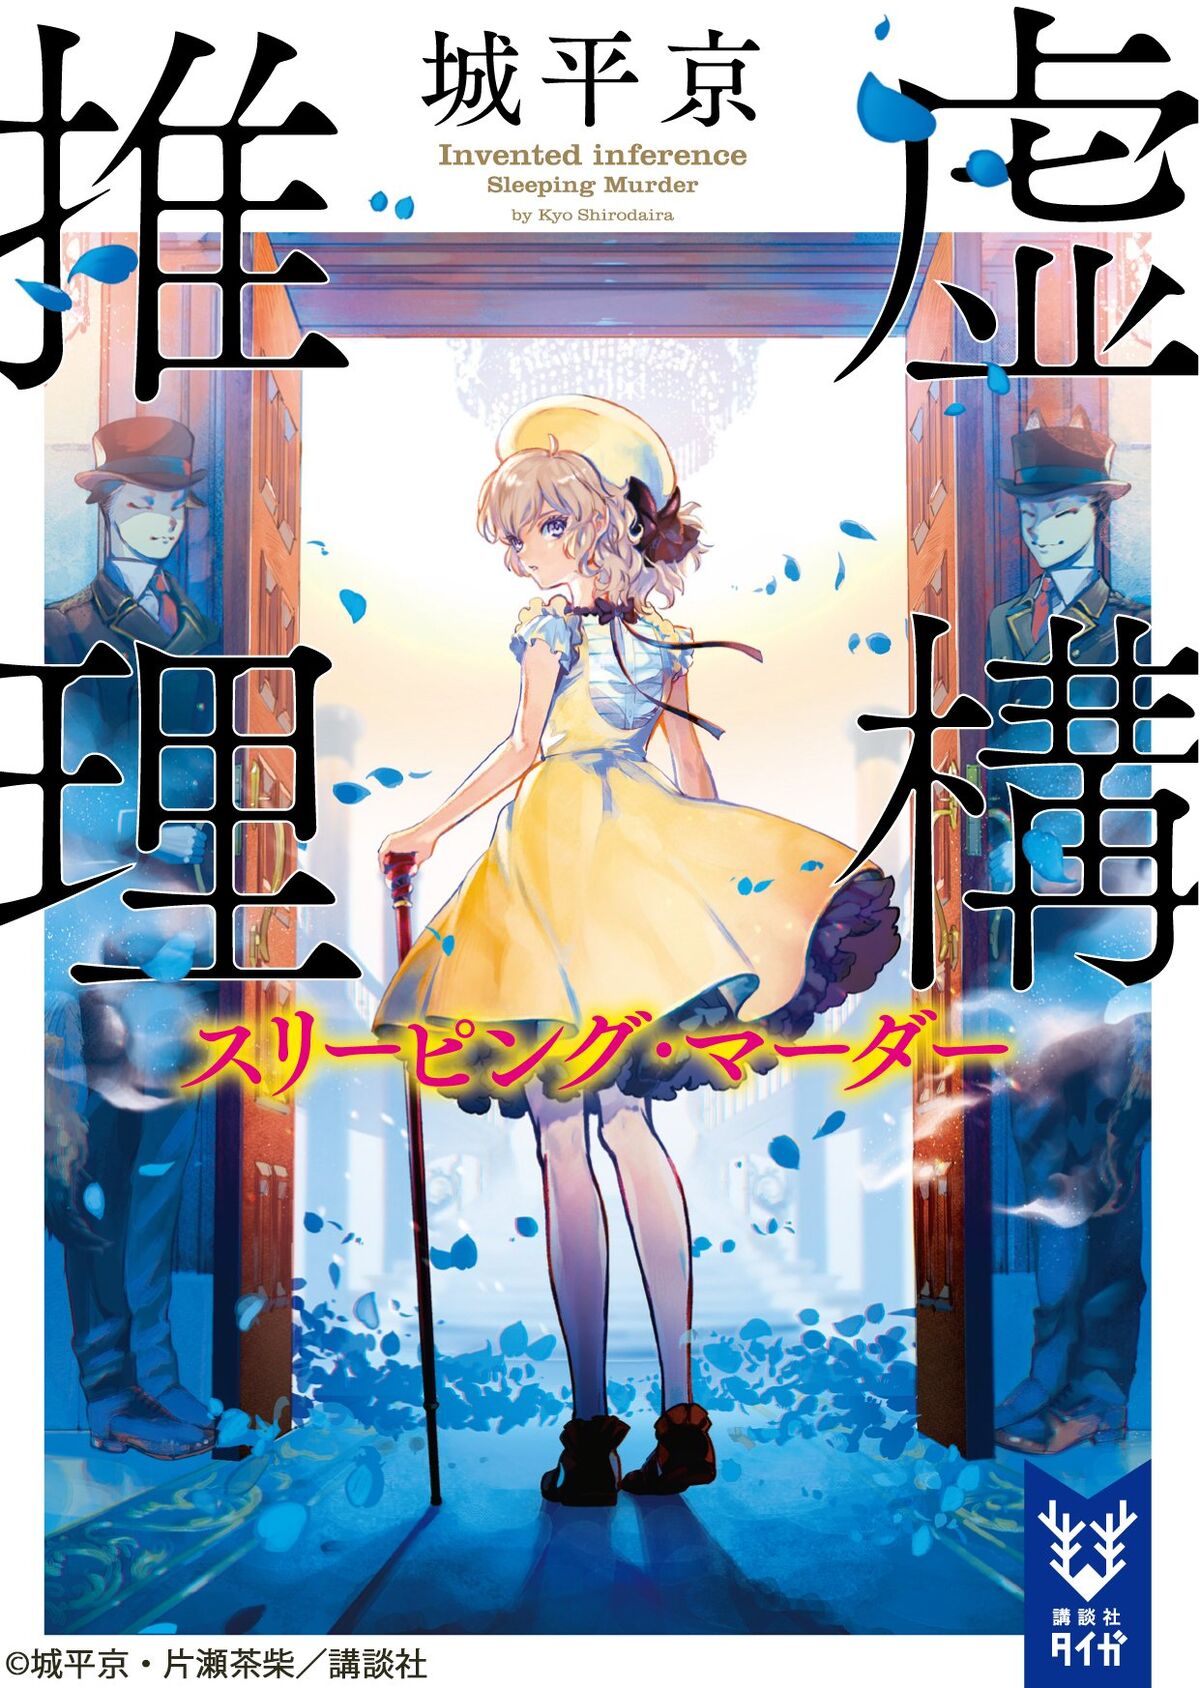 In/Spectre hay Kyokou Suiri sẽ - Sonako Light Novel Wiki